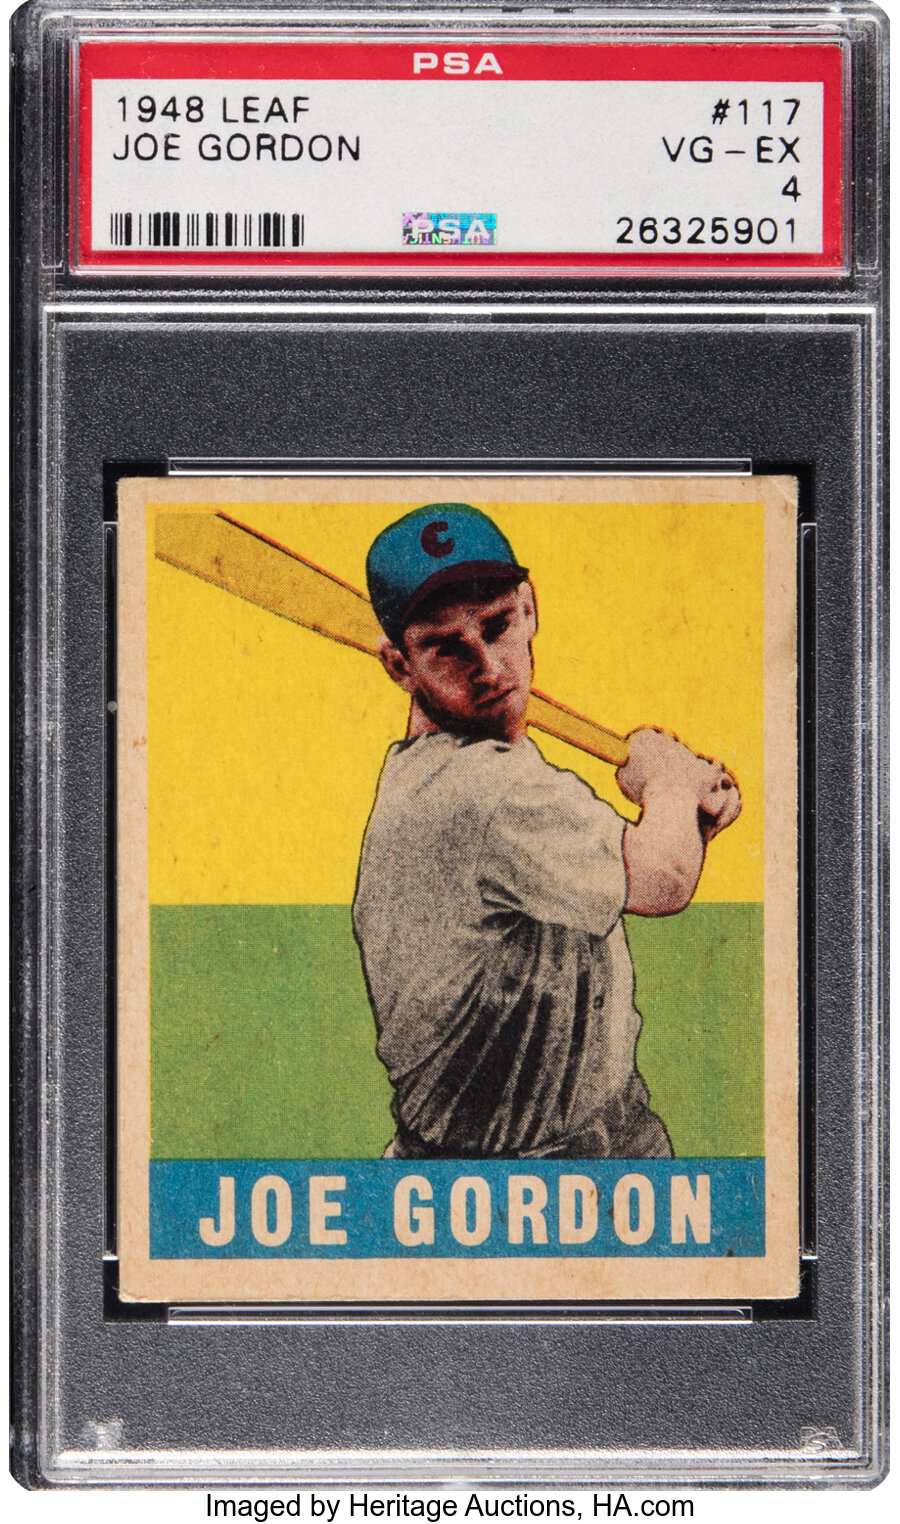 1948 Leaf Joe Gordon #117 PSA VG-EX 4